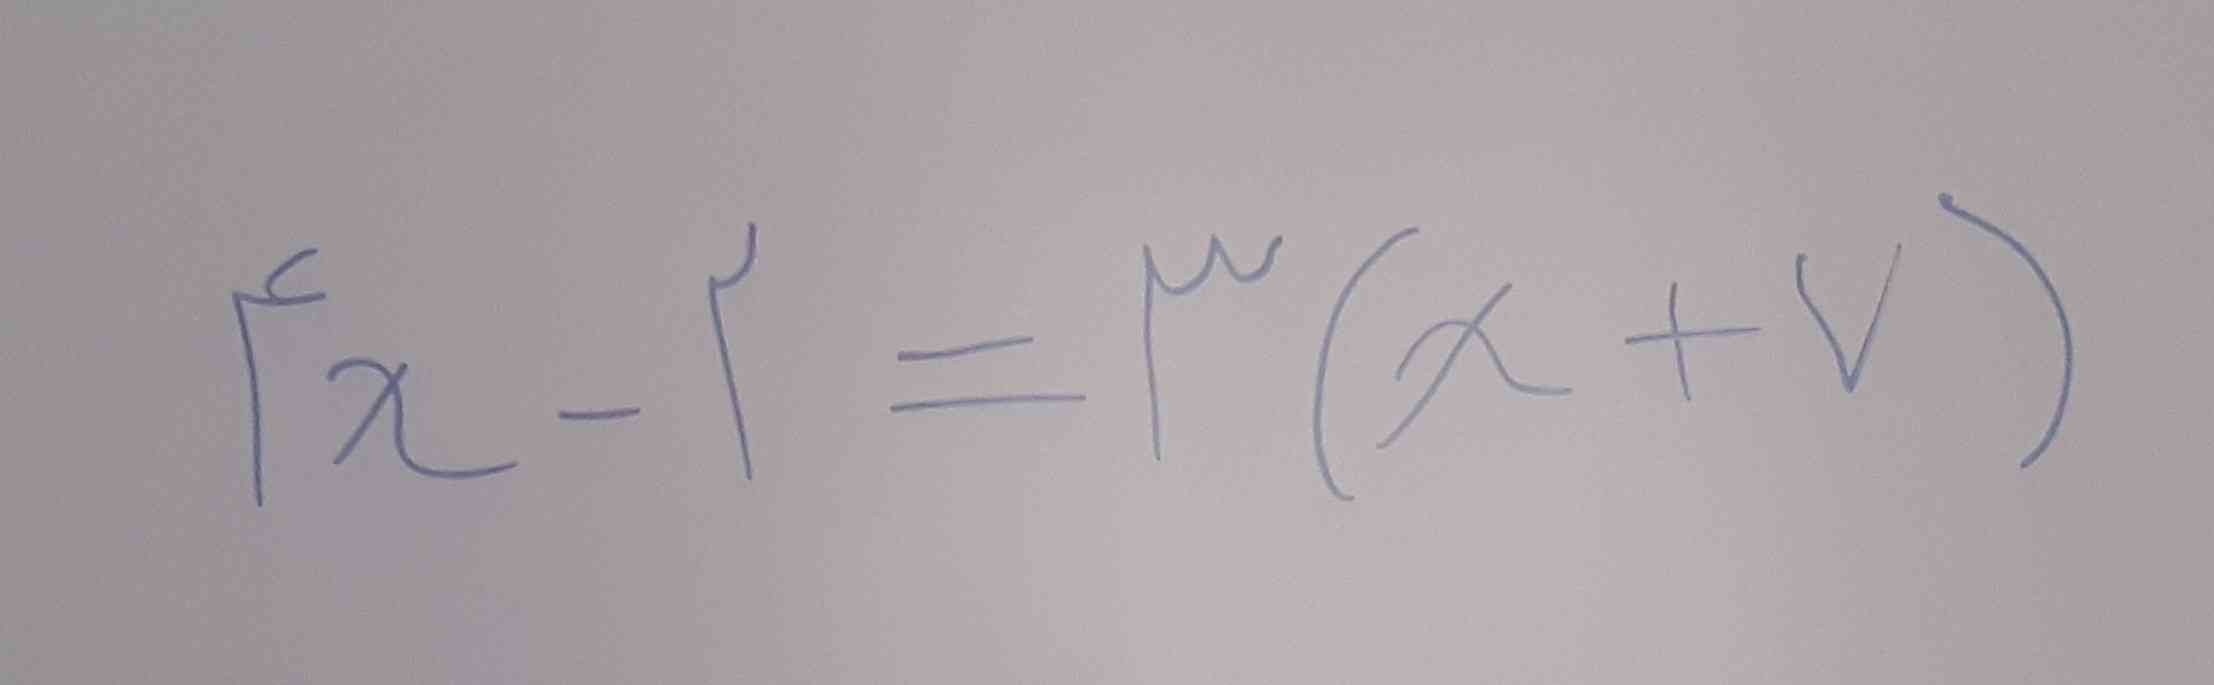 سلام میشه لطفا معادله زیر رو حل کنید